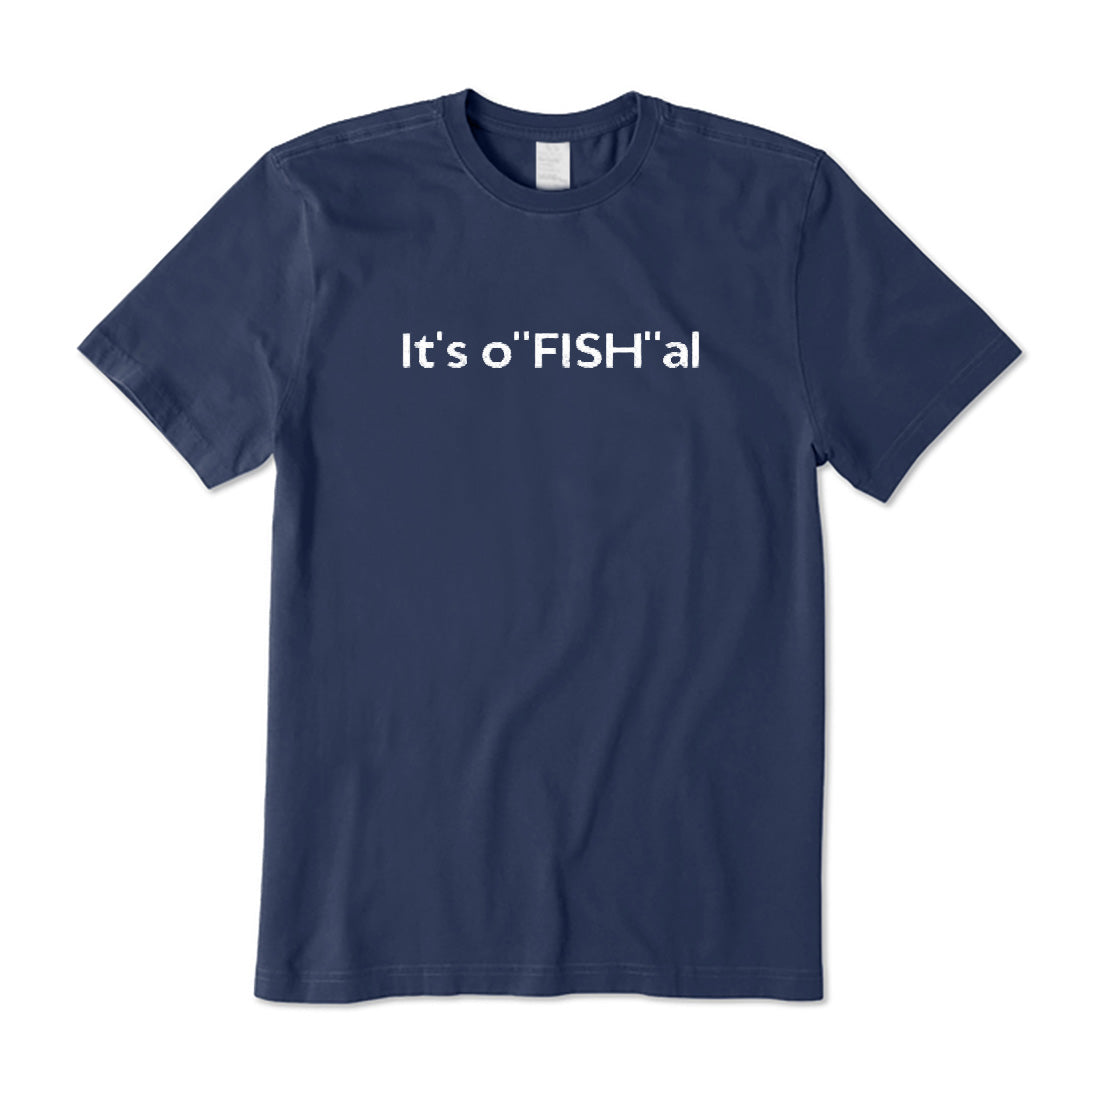 It's O"Fish"al T-Shirt